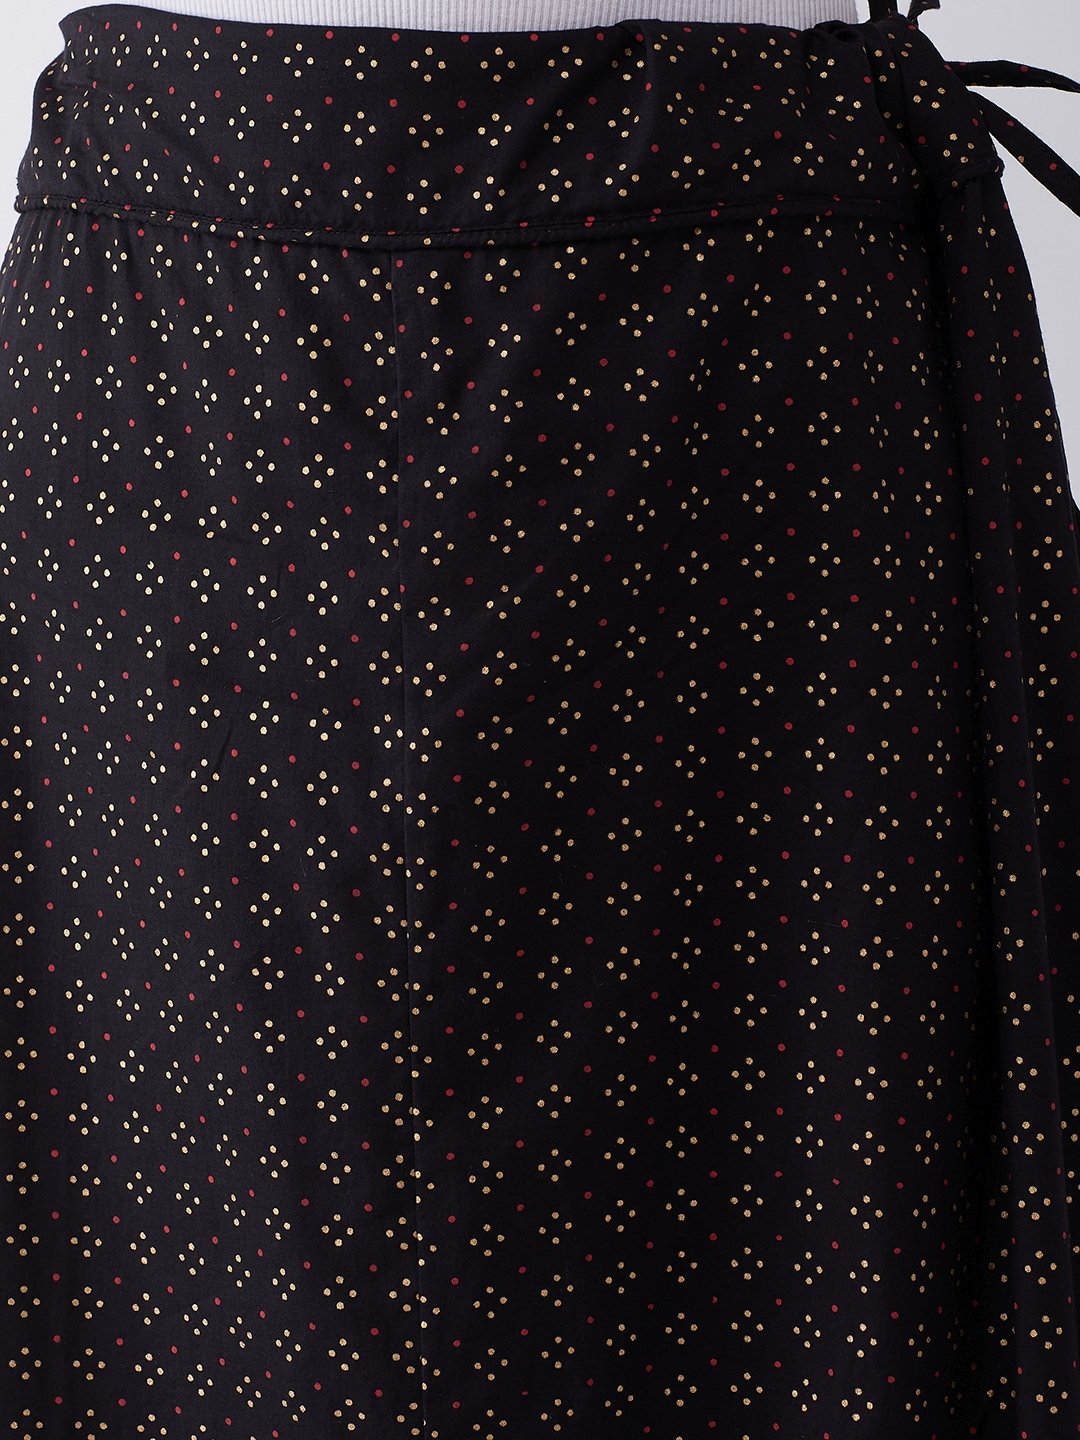 Black Gold Pin Dot Skirt